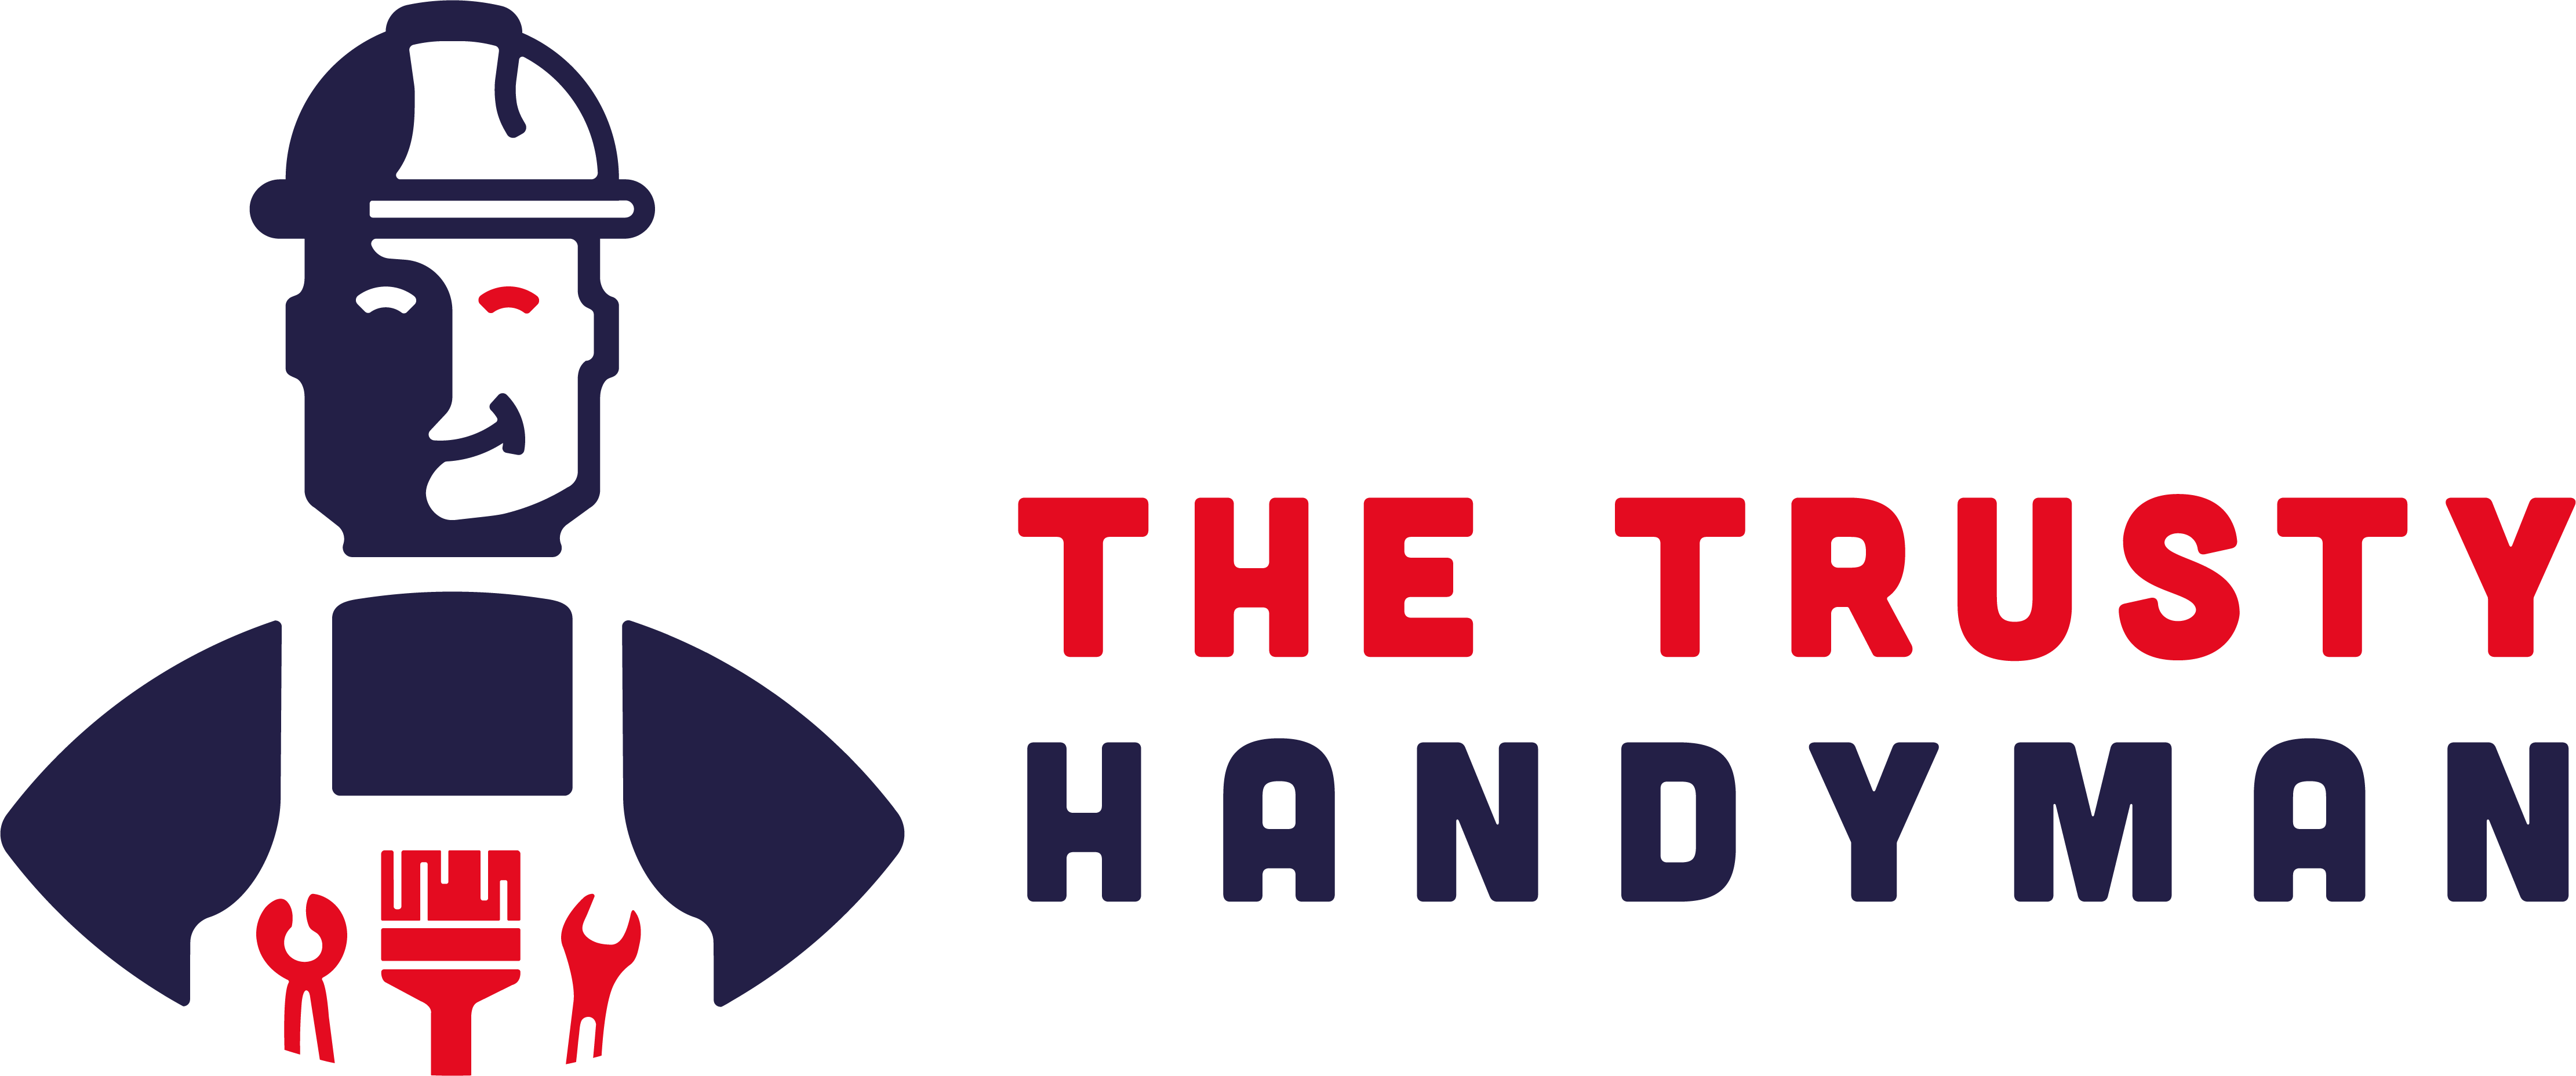 THE TRUSTY HANDYMAN_logo